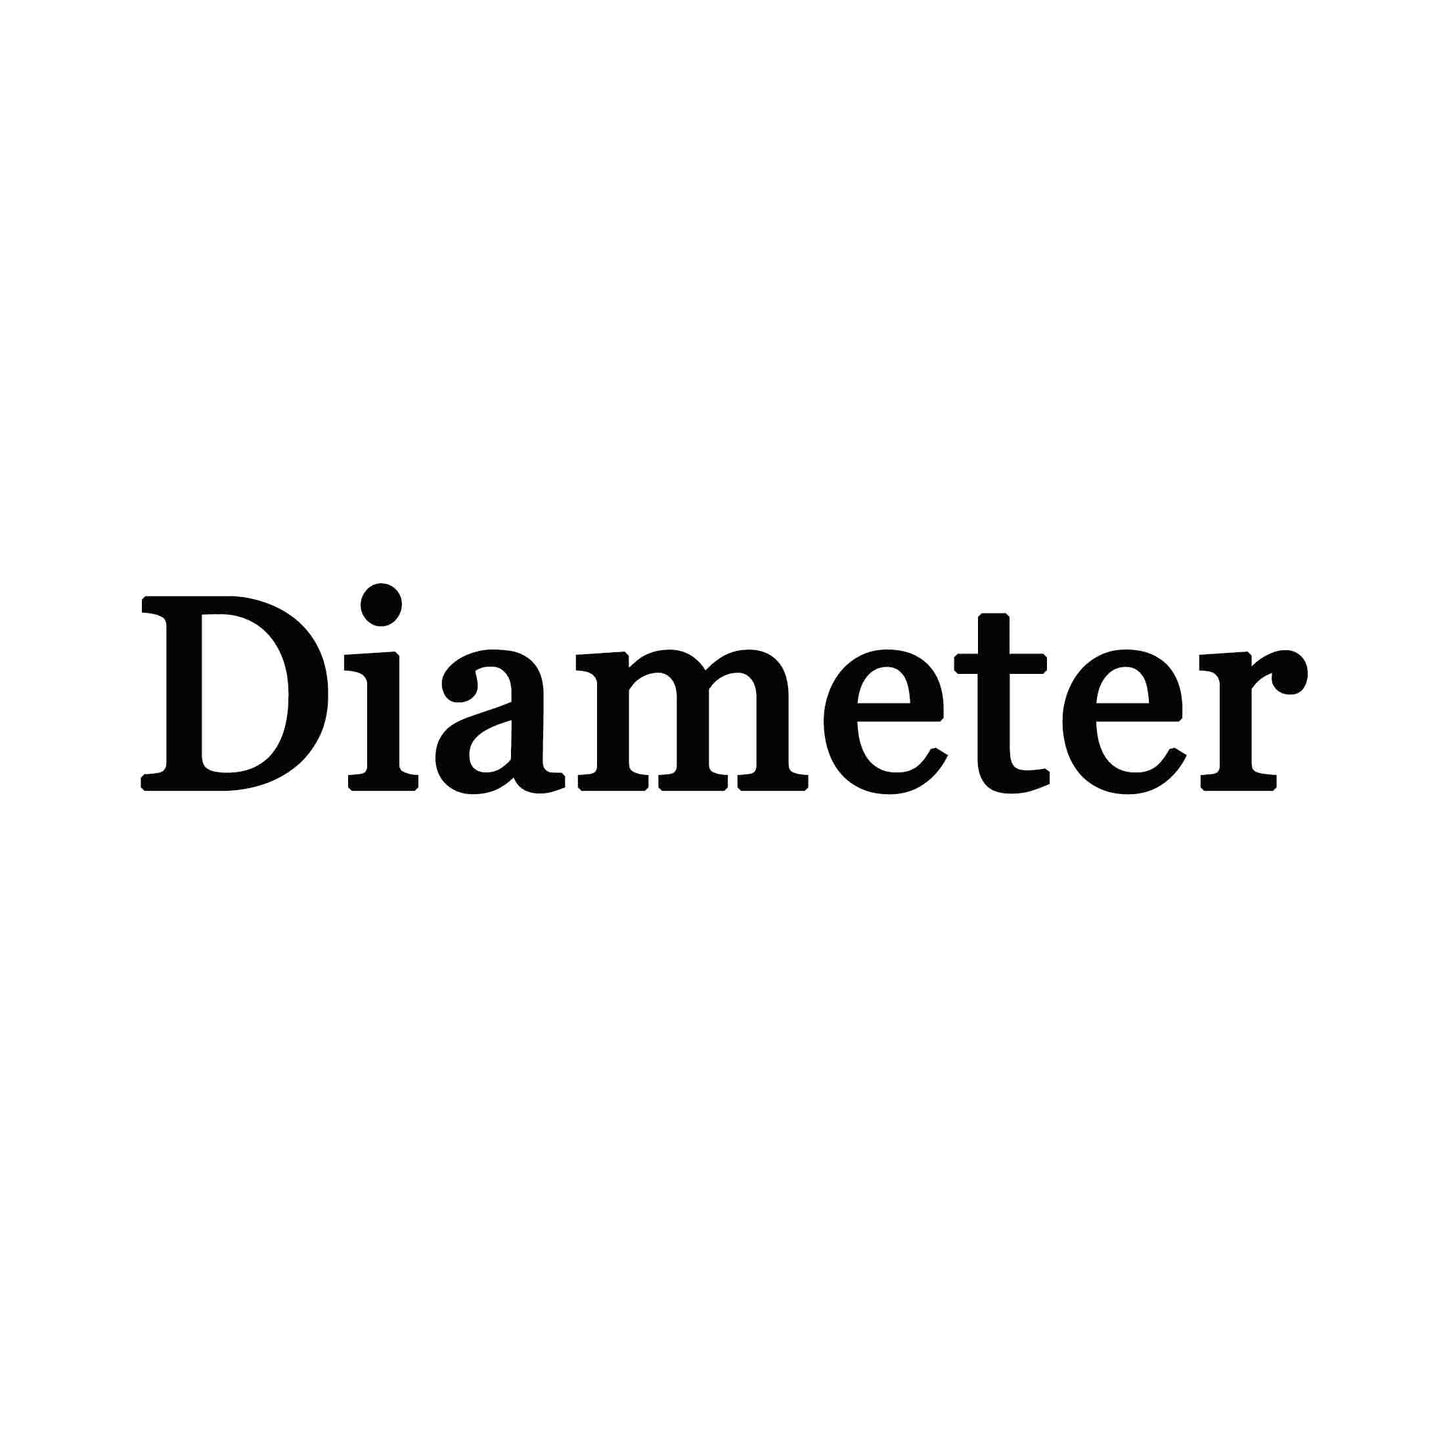 Name Sign Diameter 24" - FromPicToArt